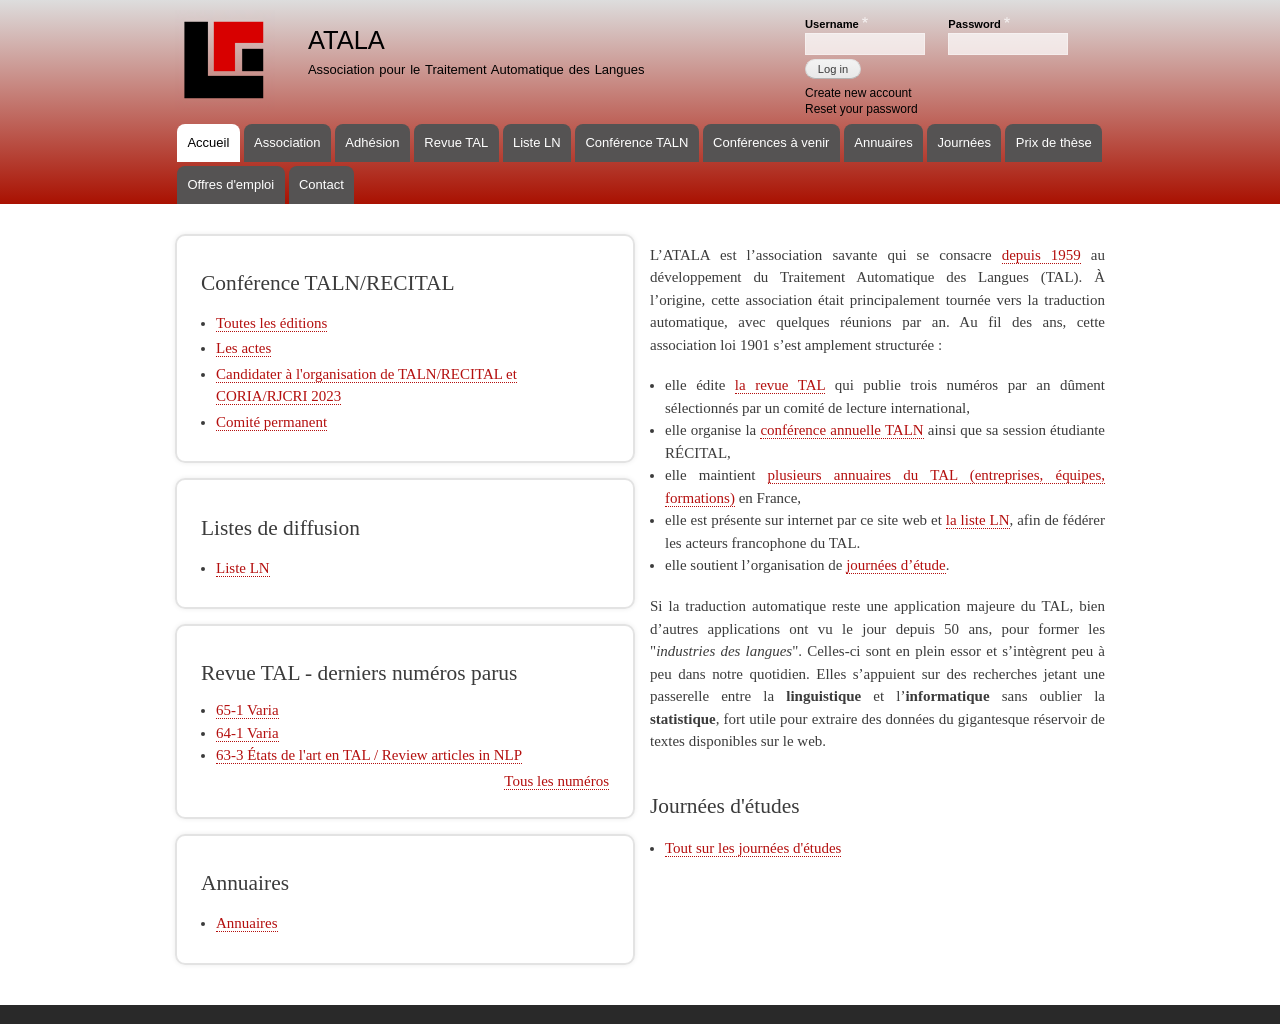 atala.org